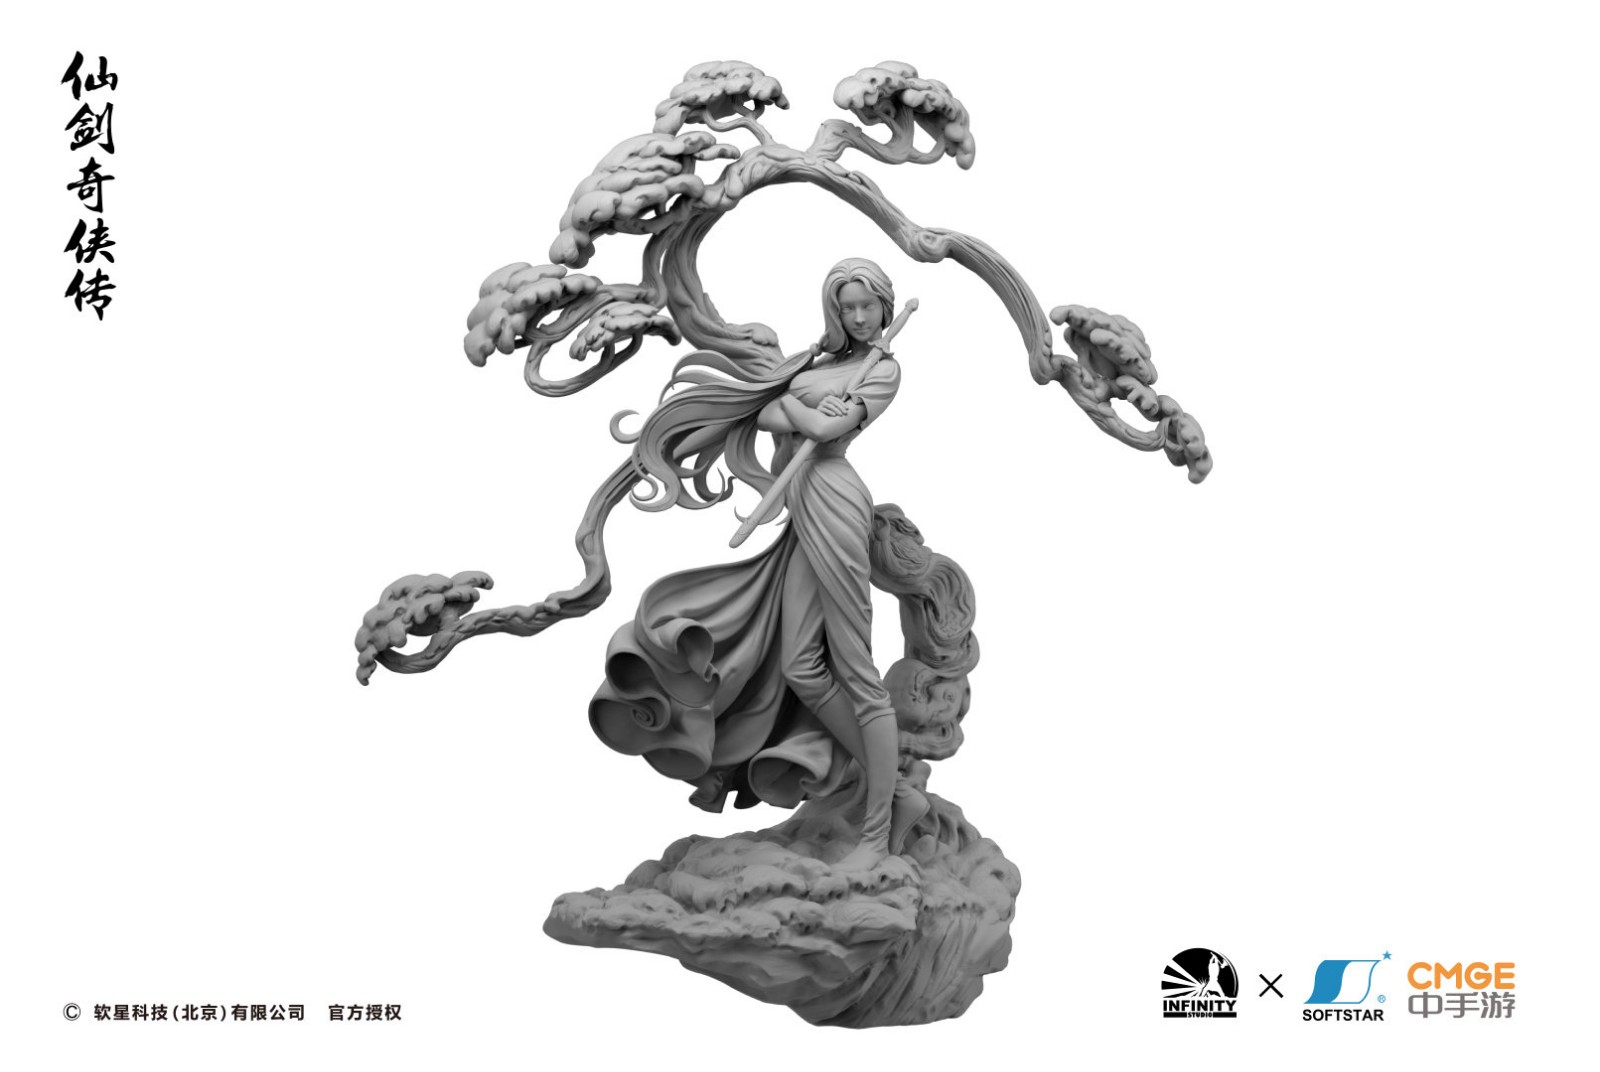 开天工作室 x 软星推出《仙剑奇侠传》林月如雕像